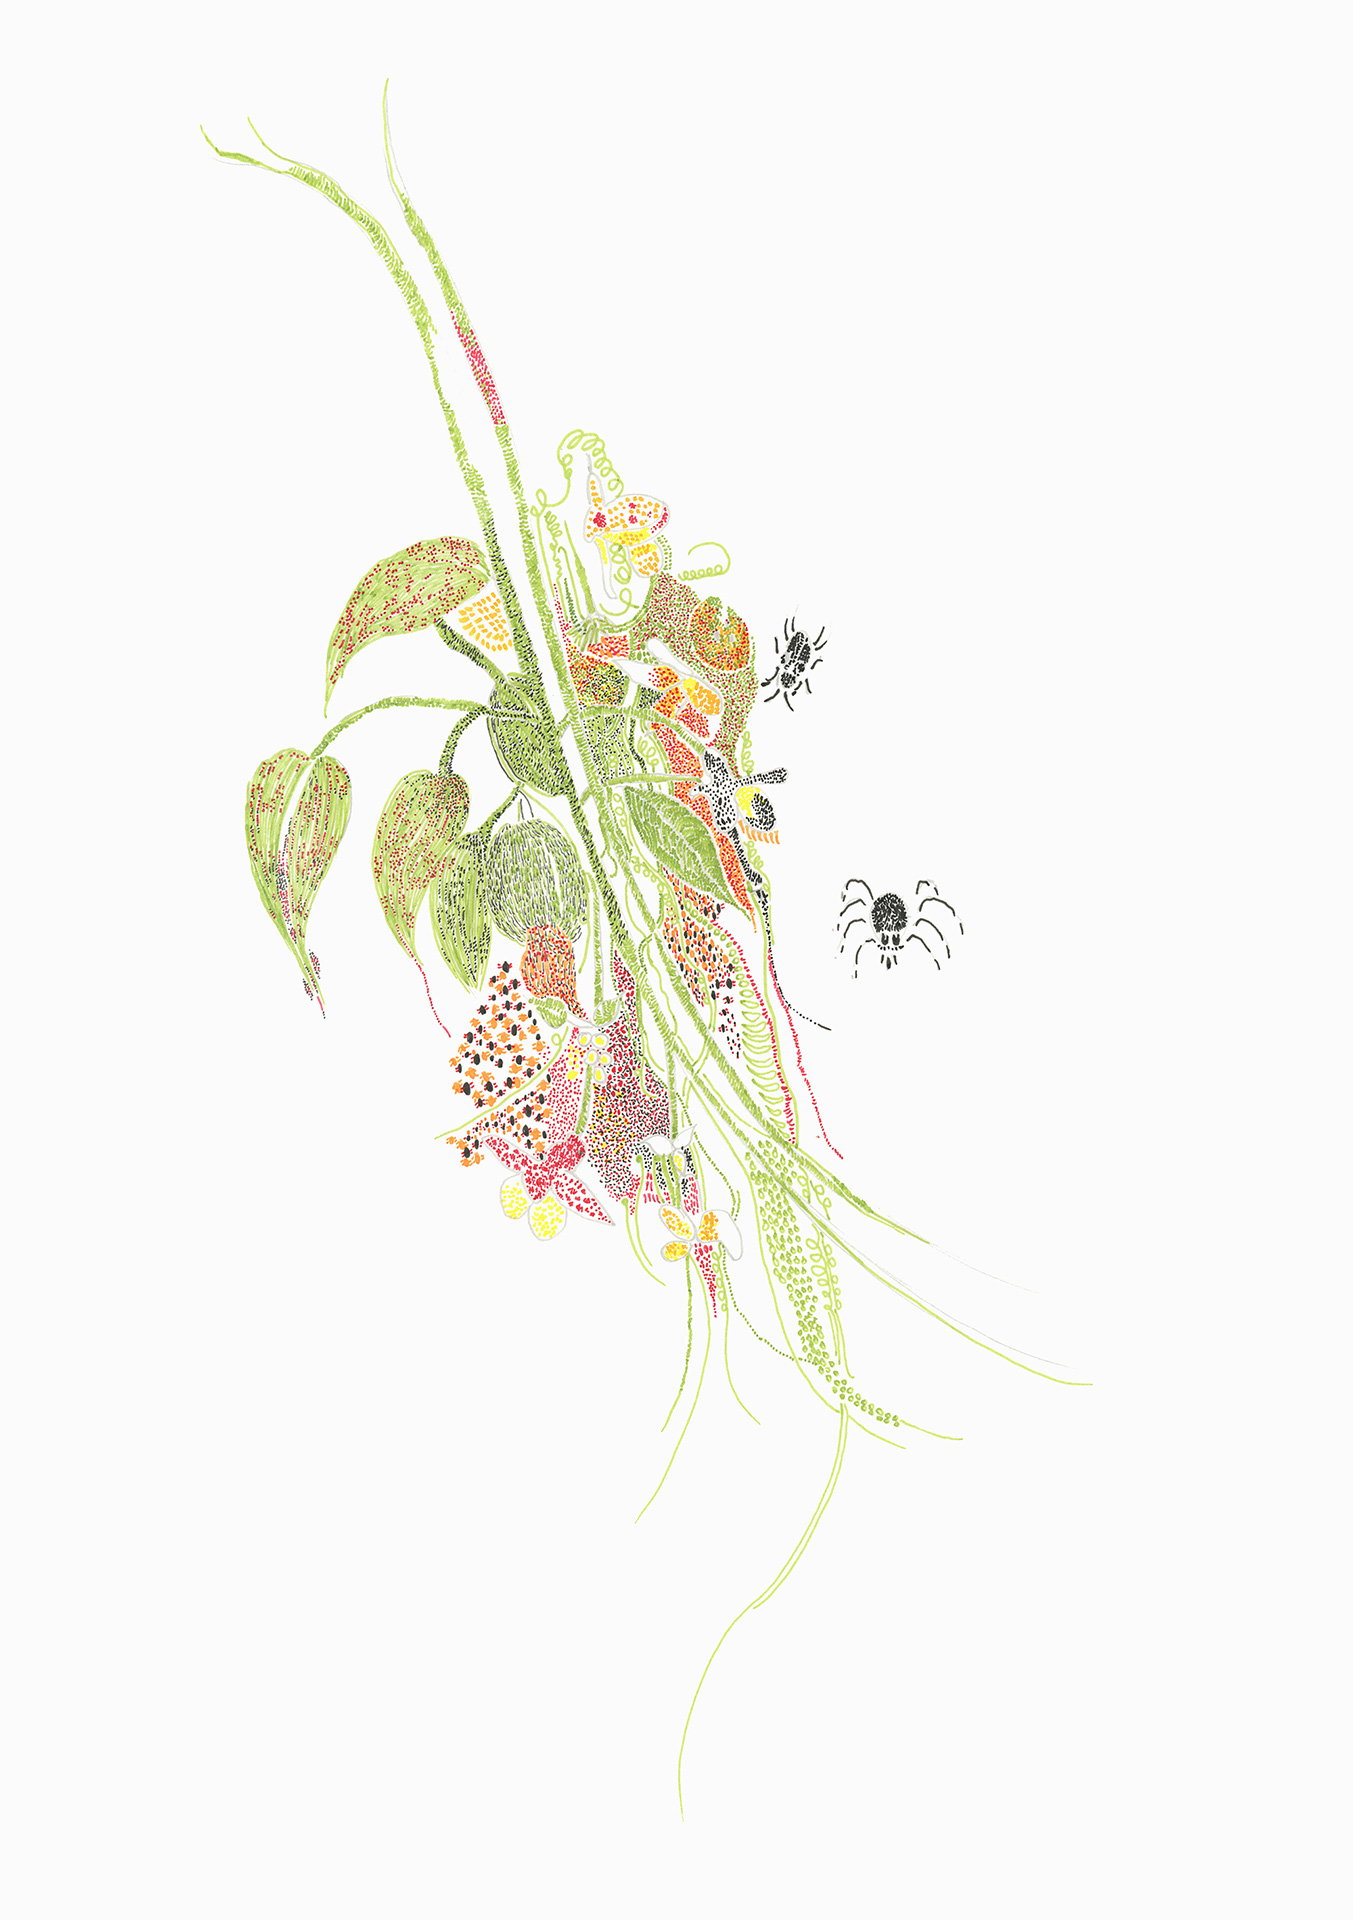 Abbildung einer Zeichnung, auf der eine Pflanze und Spinnen abgebildet sind.